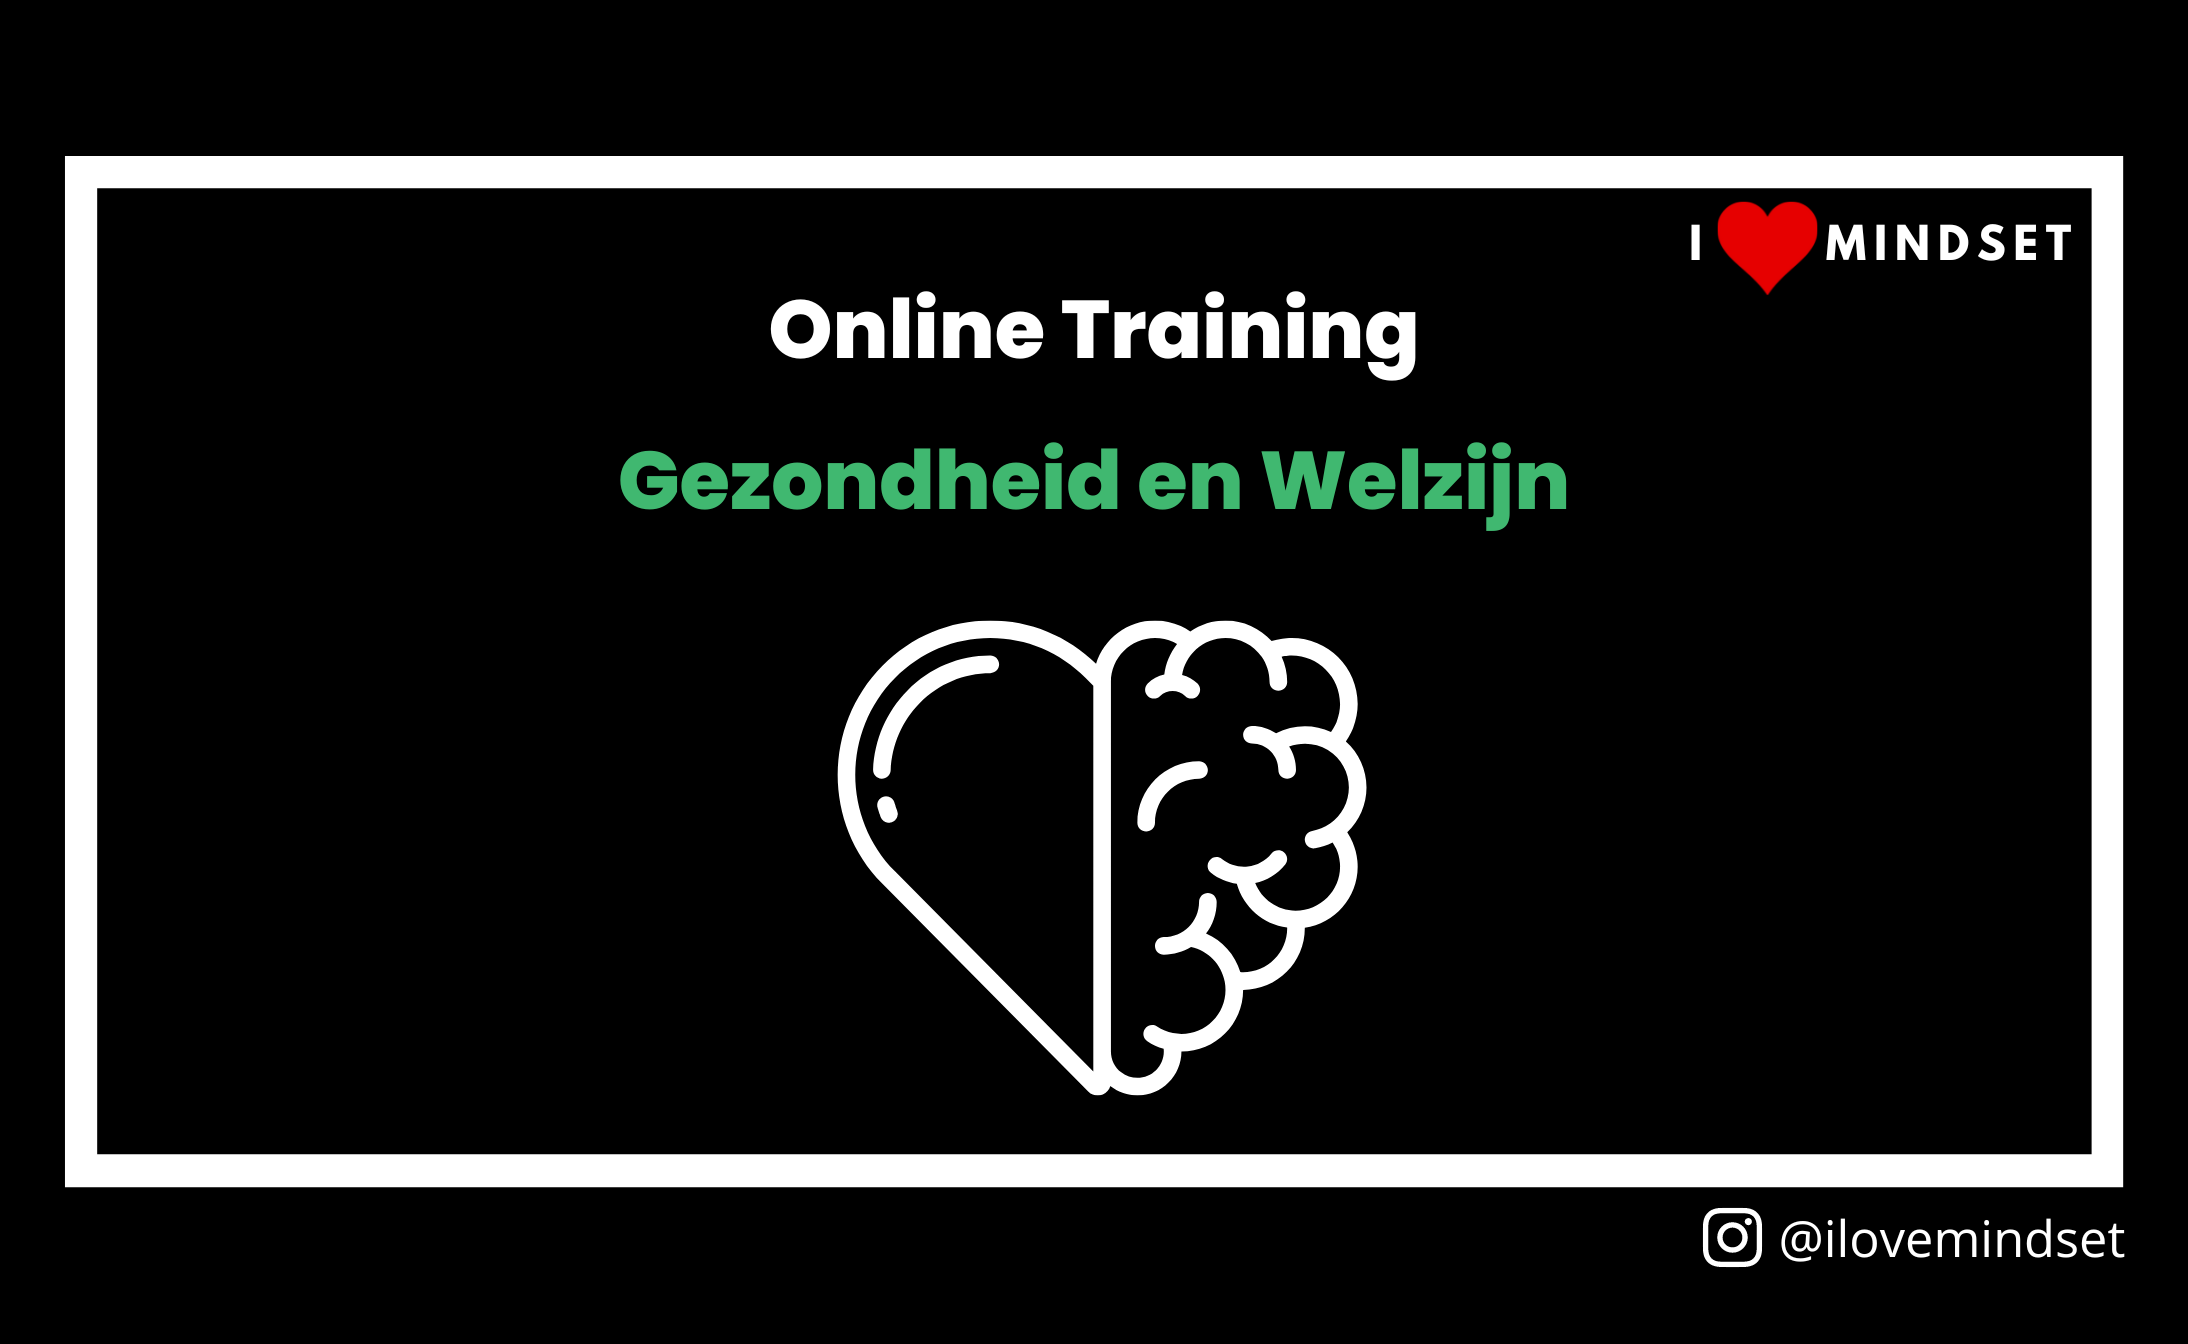 Online Training- Gezondheid en Welzijn (coming soon!)